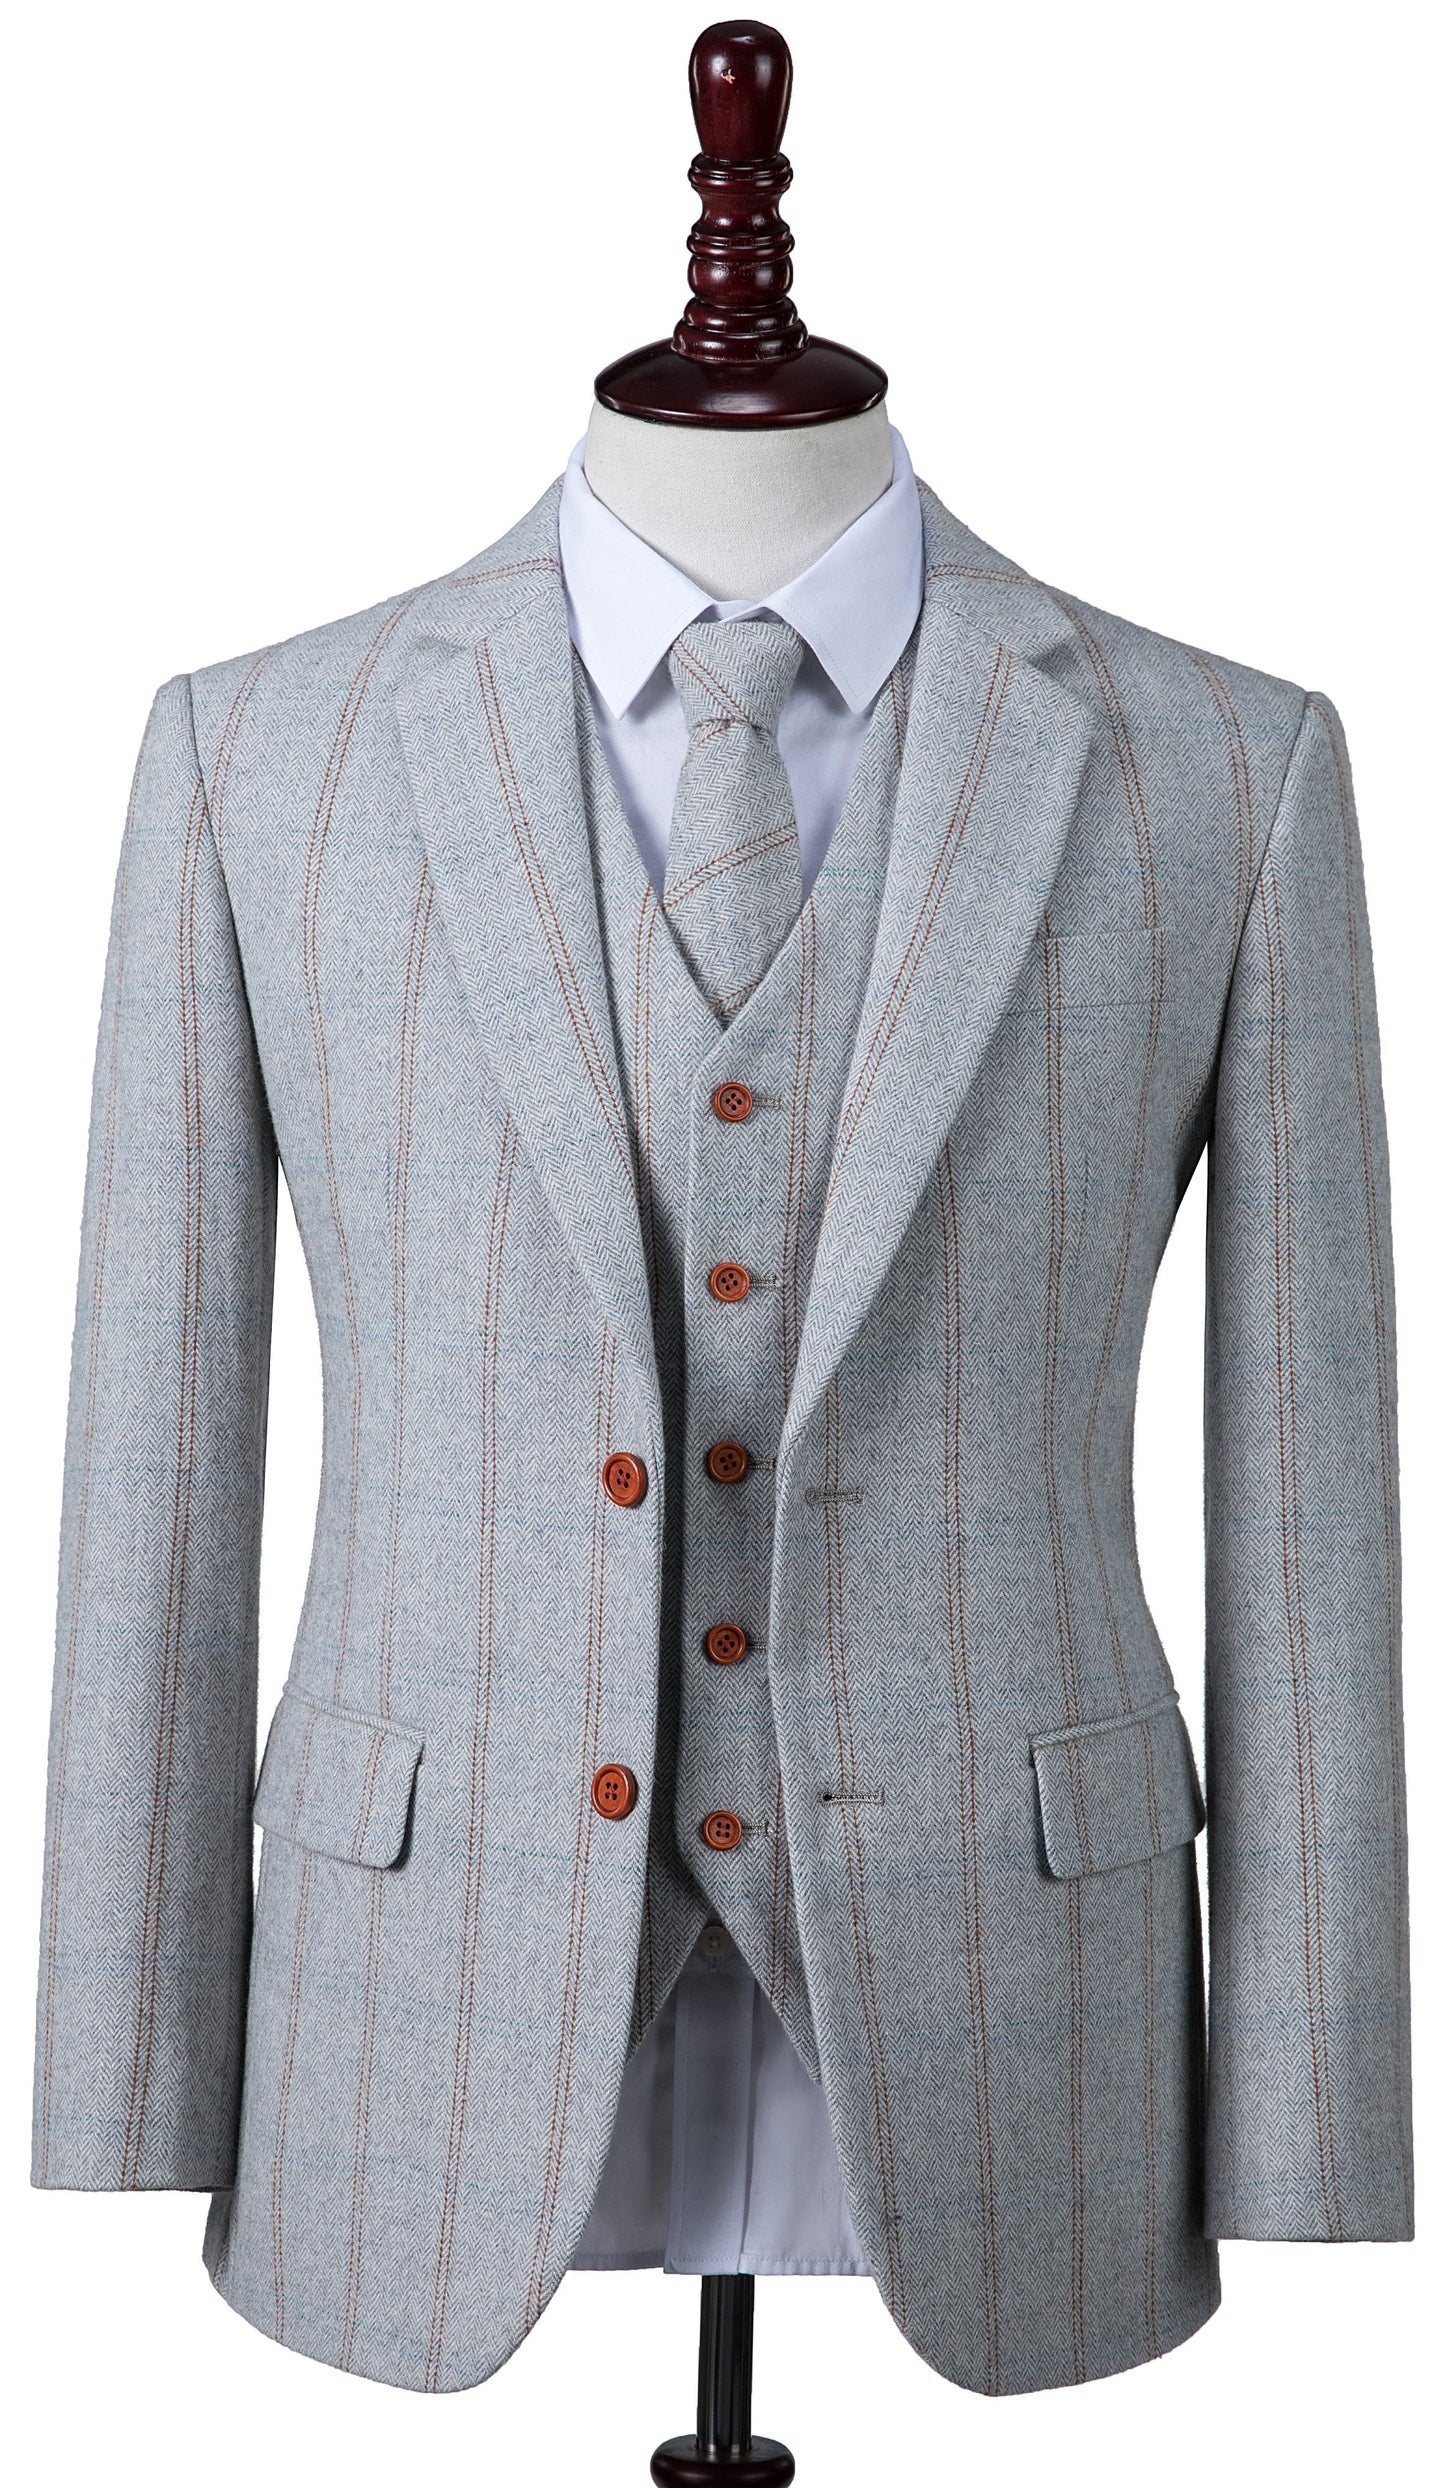 Light Grey Overcheck Herringbone Tweed Suit